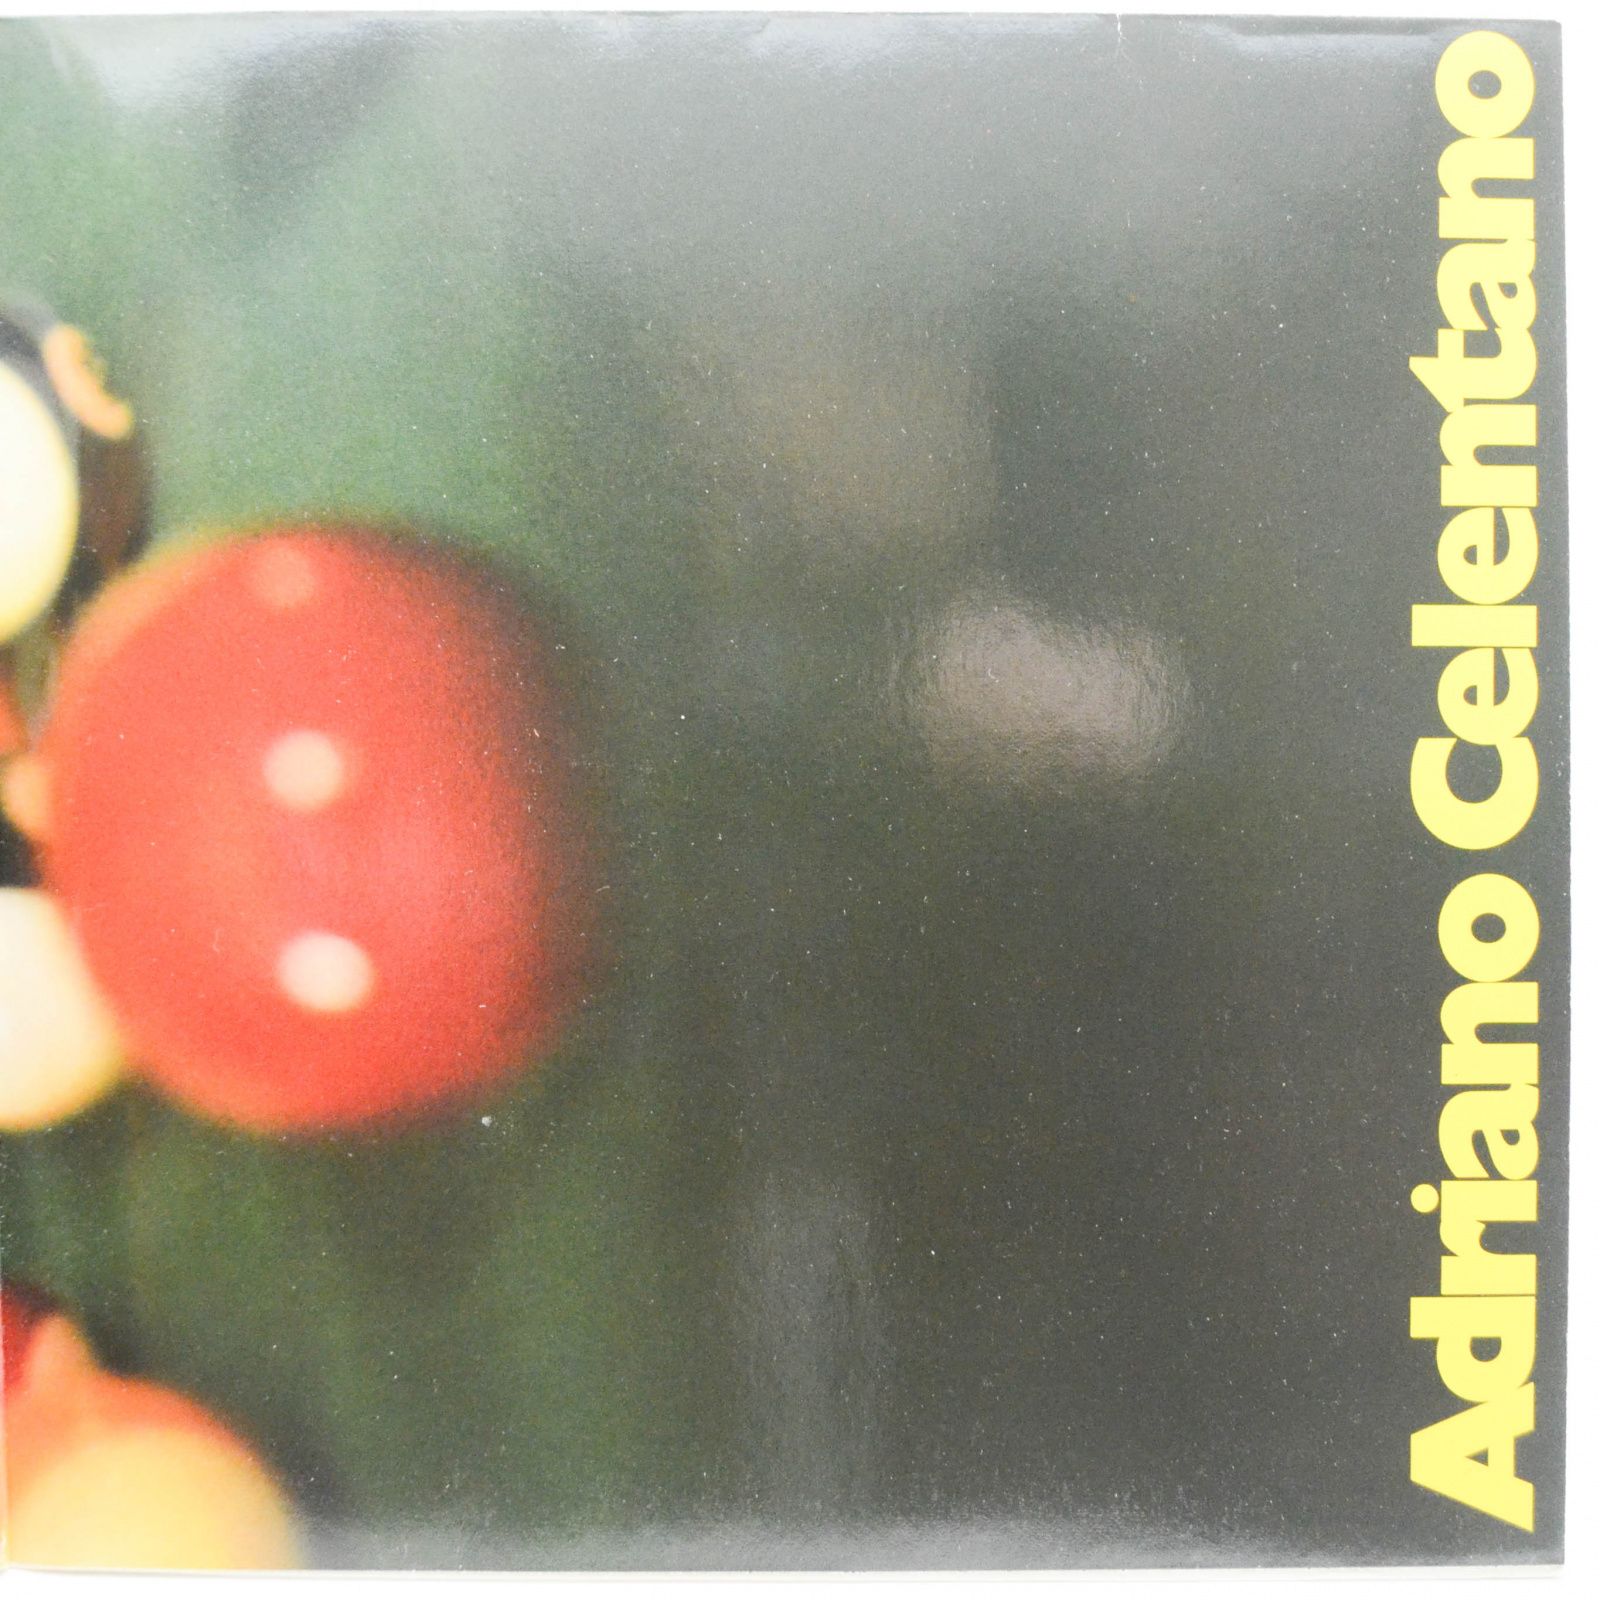 Adriano Celentano — Azzurro (2LP), 1971